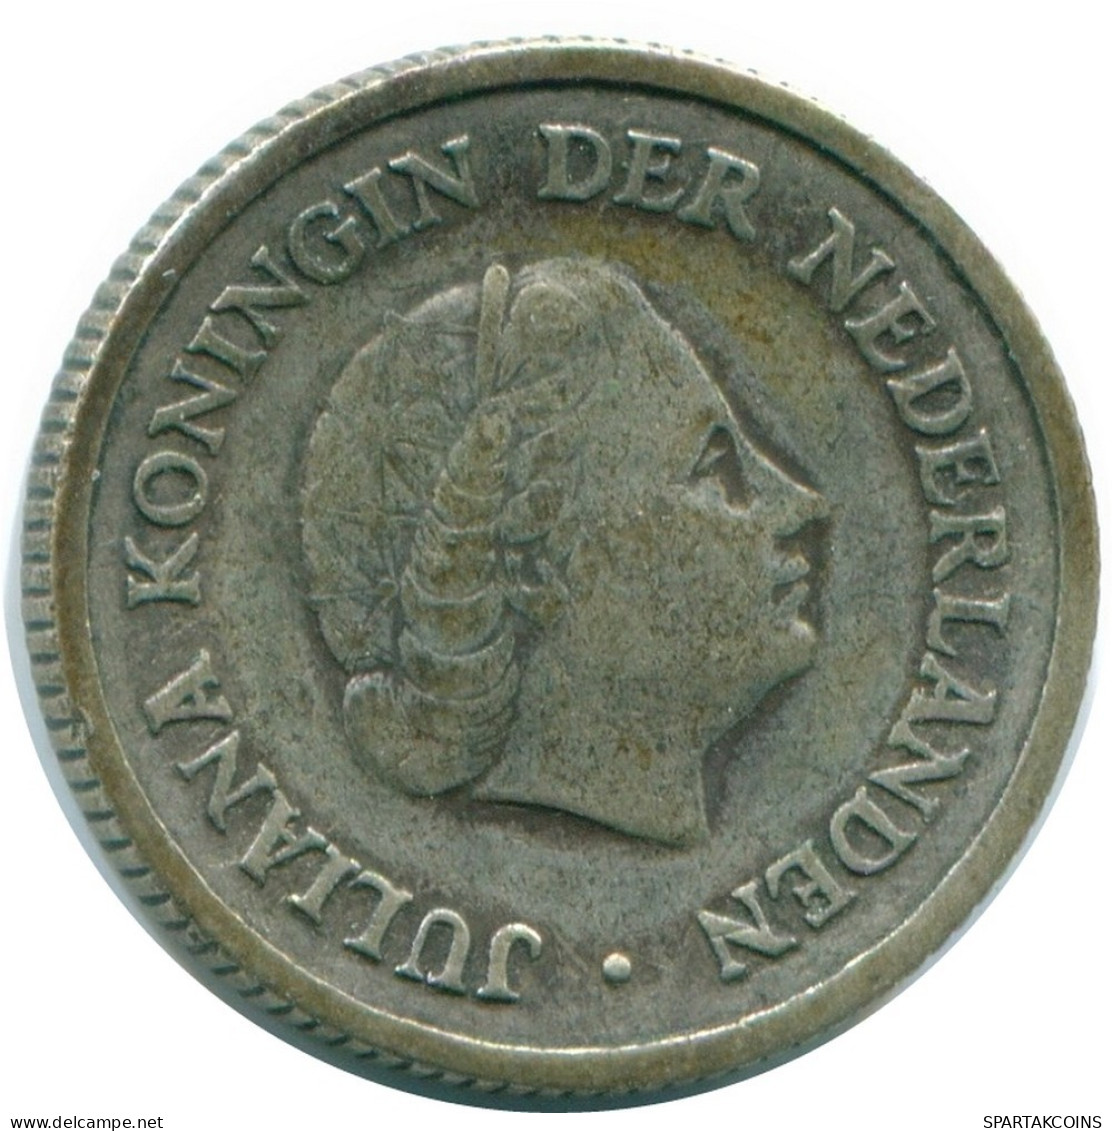 1/4 GULDEN 1956 NIEDERLÄNDISCHE ANTILLEN SILBER Koloniale Münze #NL10932.4.D.A - Antilles Néerlandaises